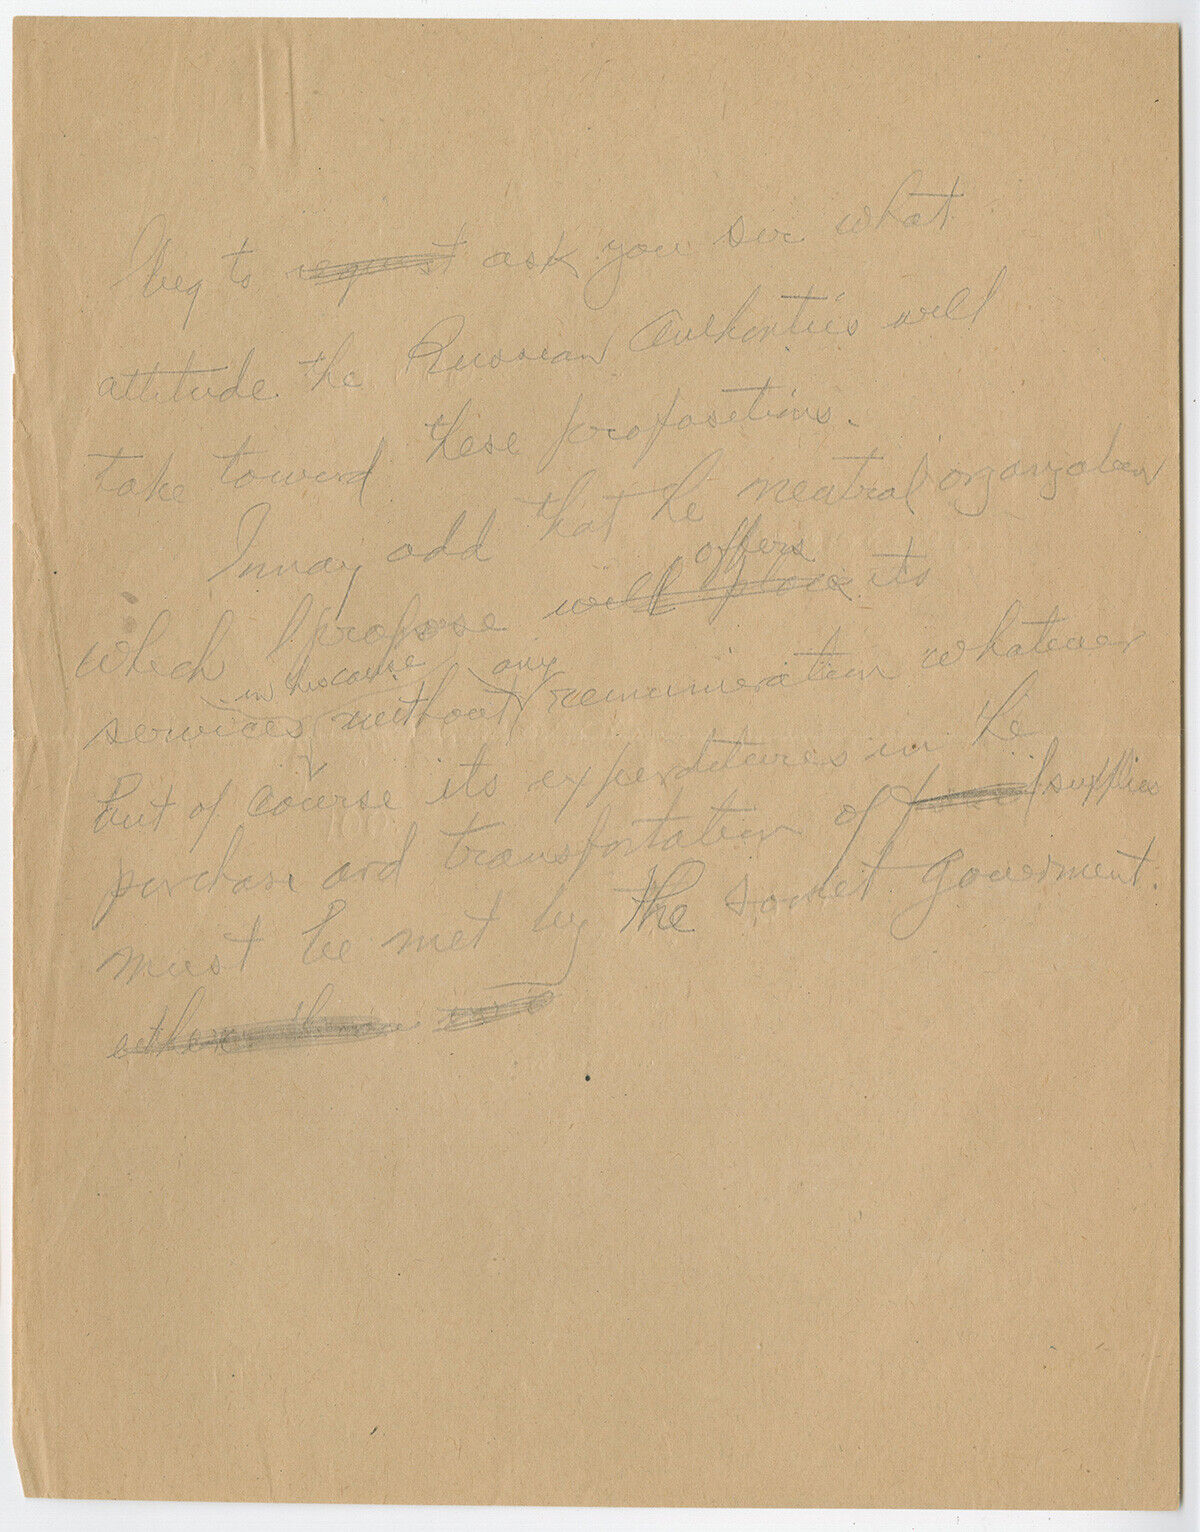 1919 Herbert Hoover Draft Note & Fredtjof Nansen Letter to Vladimir Lenin